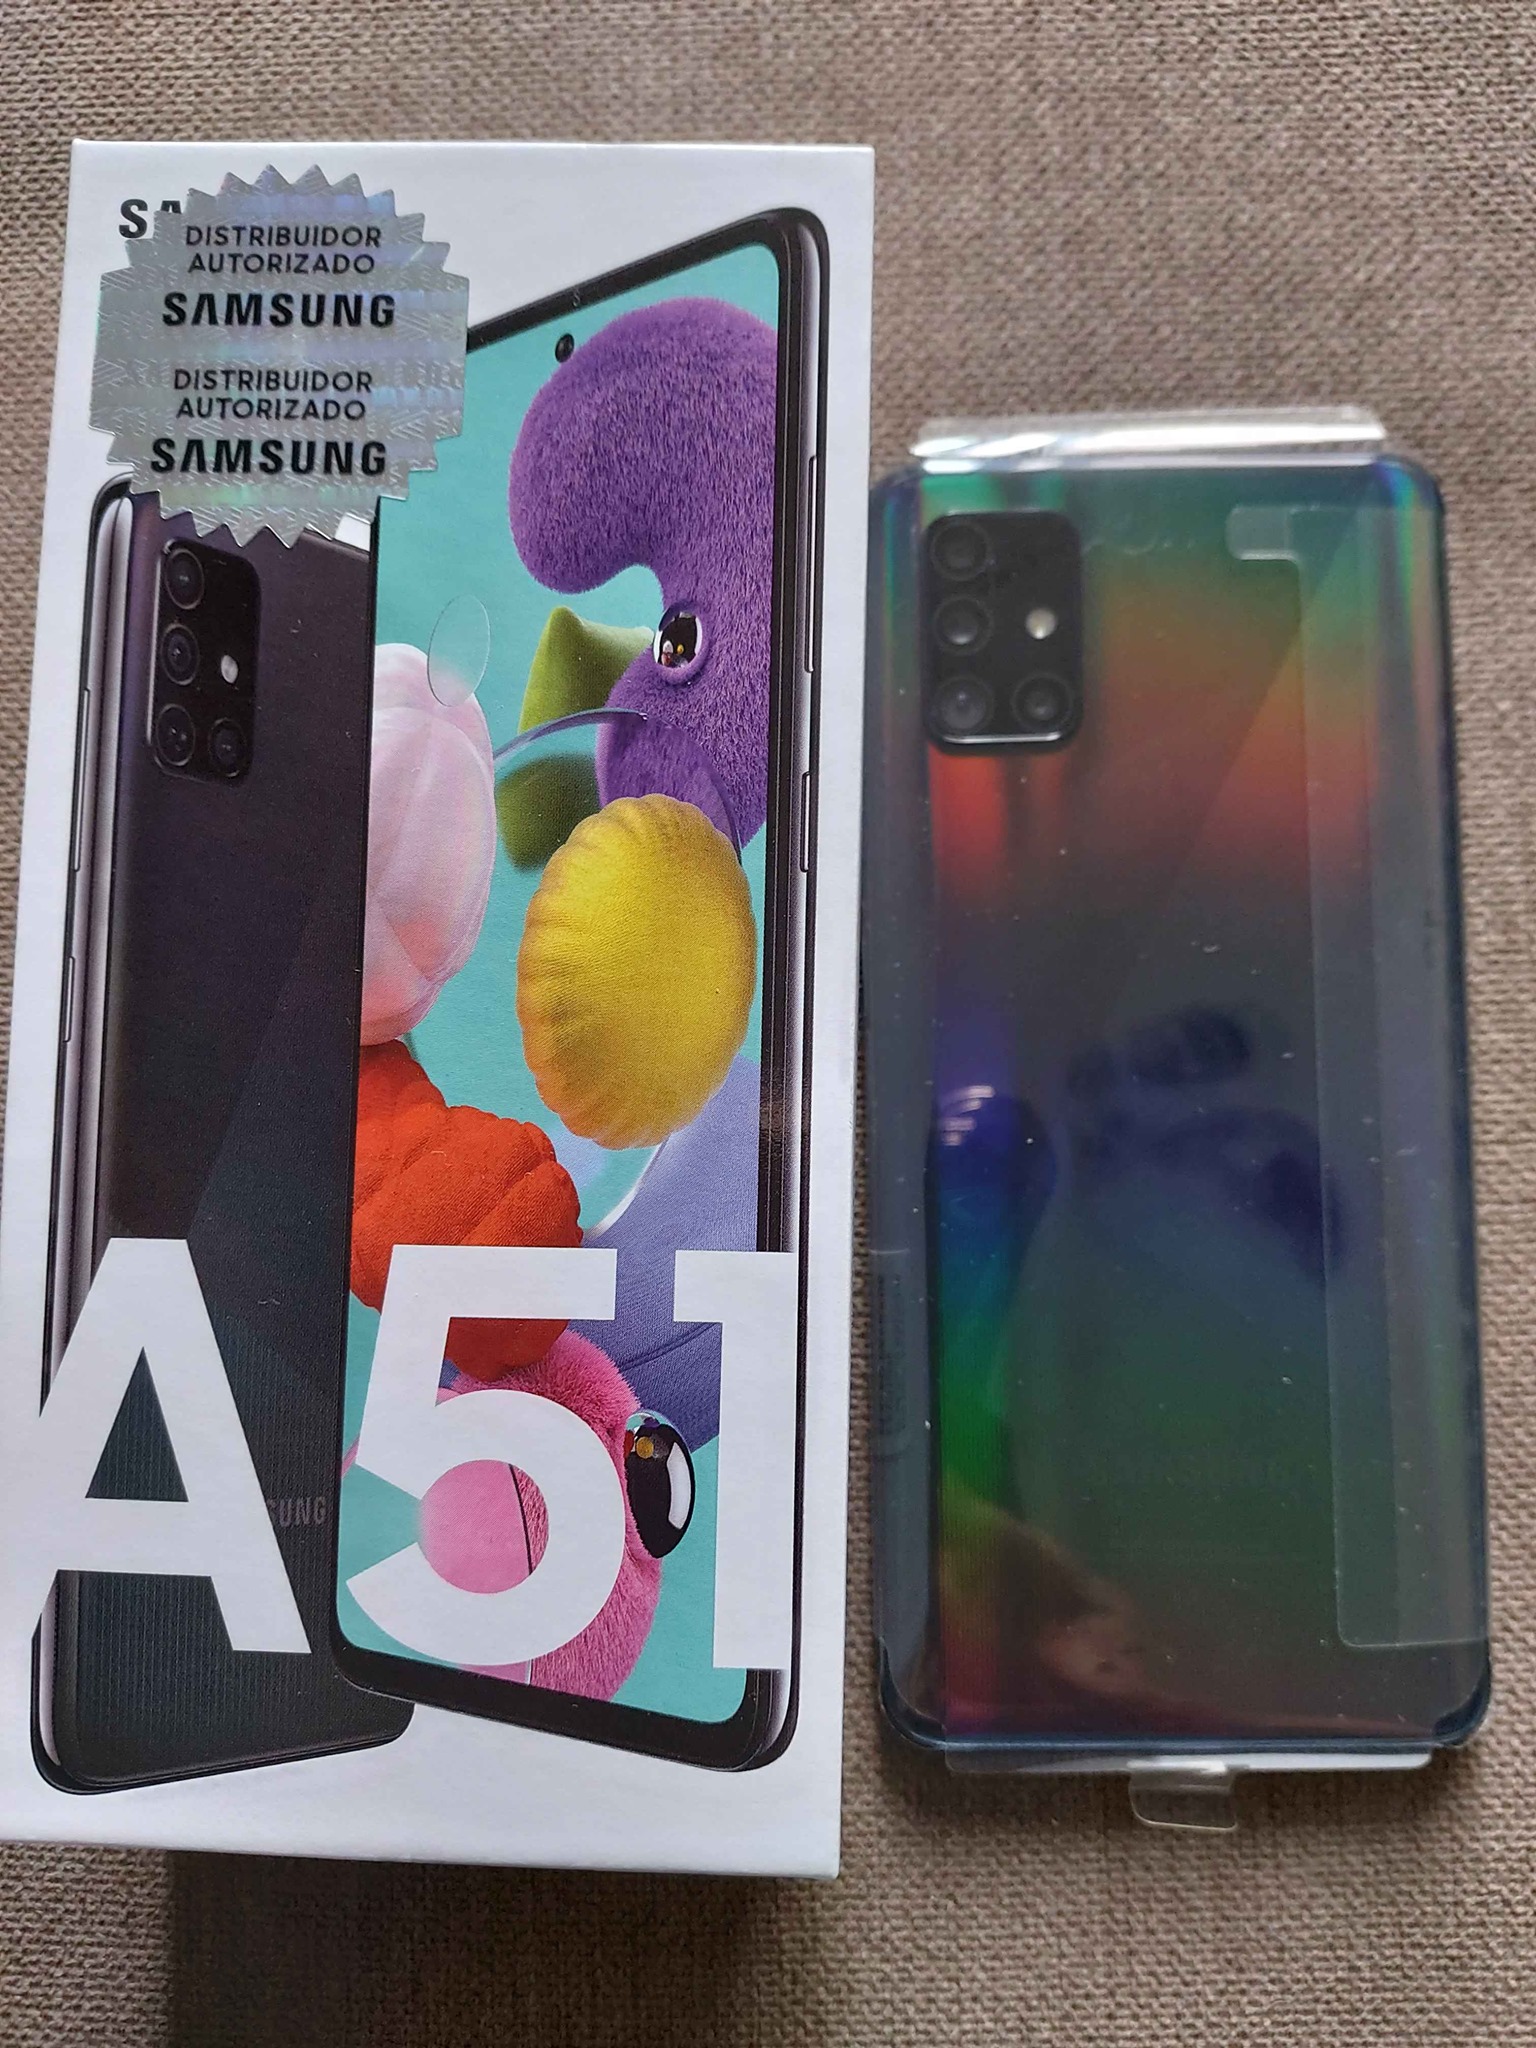 Vendo nuevo A51 Samsung